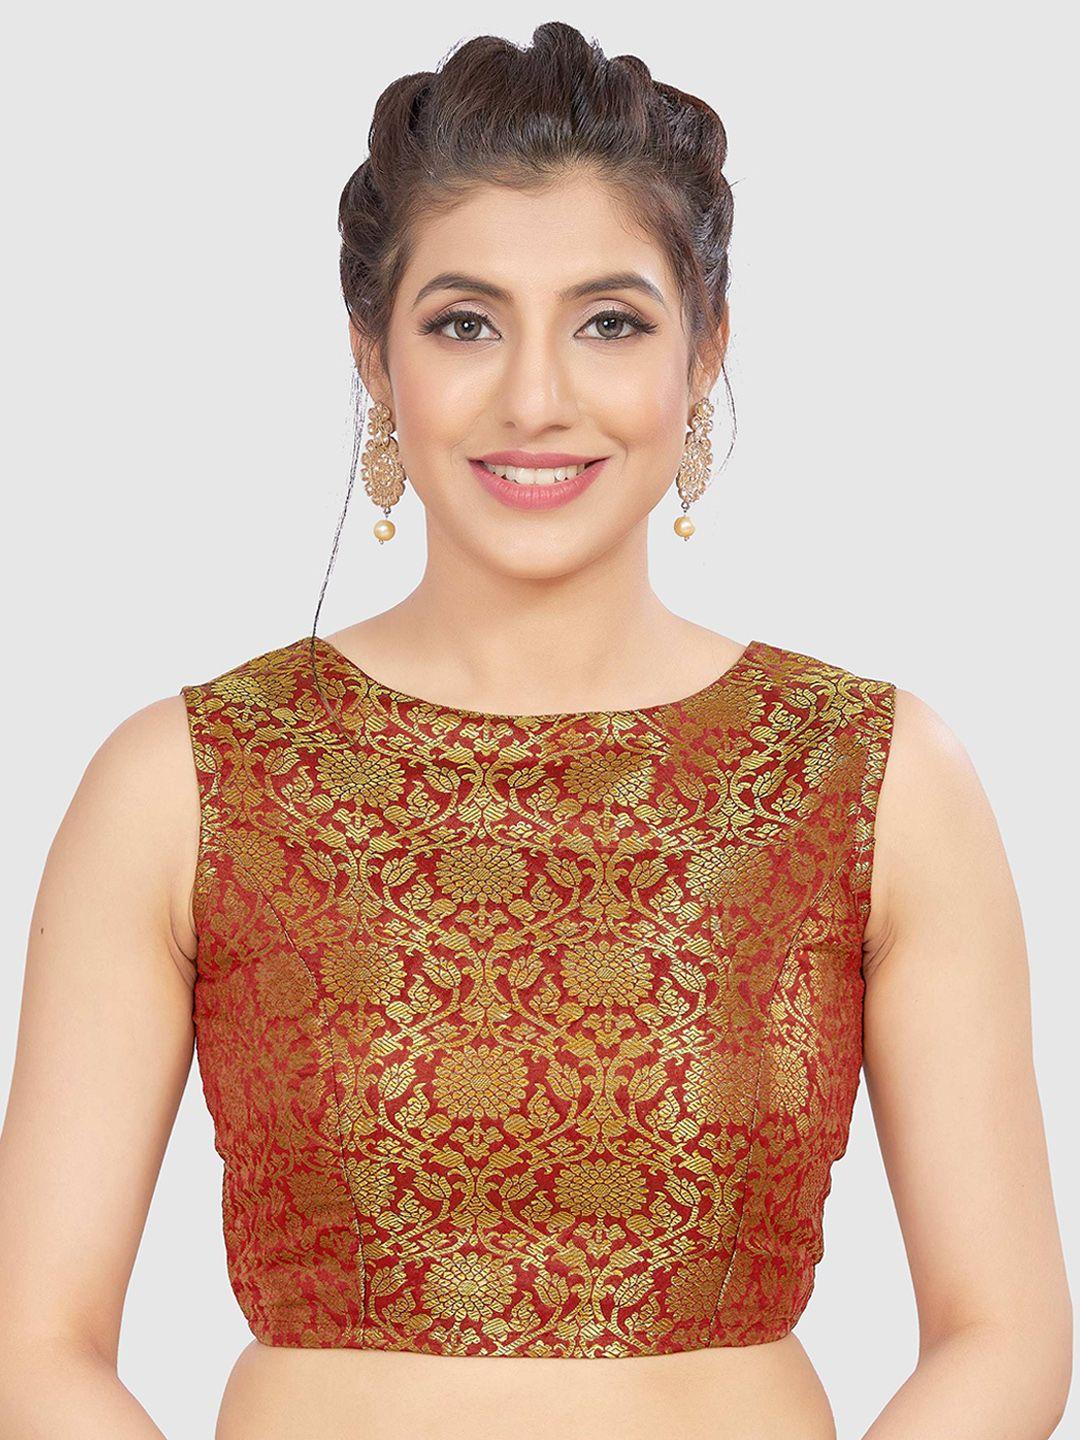 madhu fashion woven design banaras brocade saree blouse